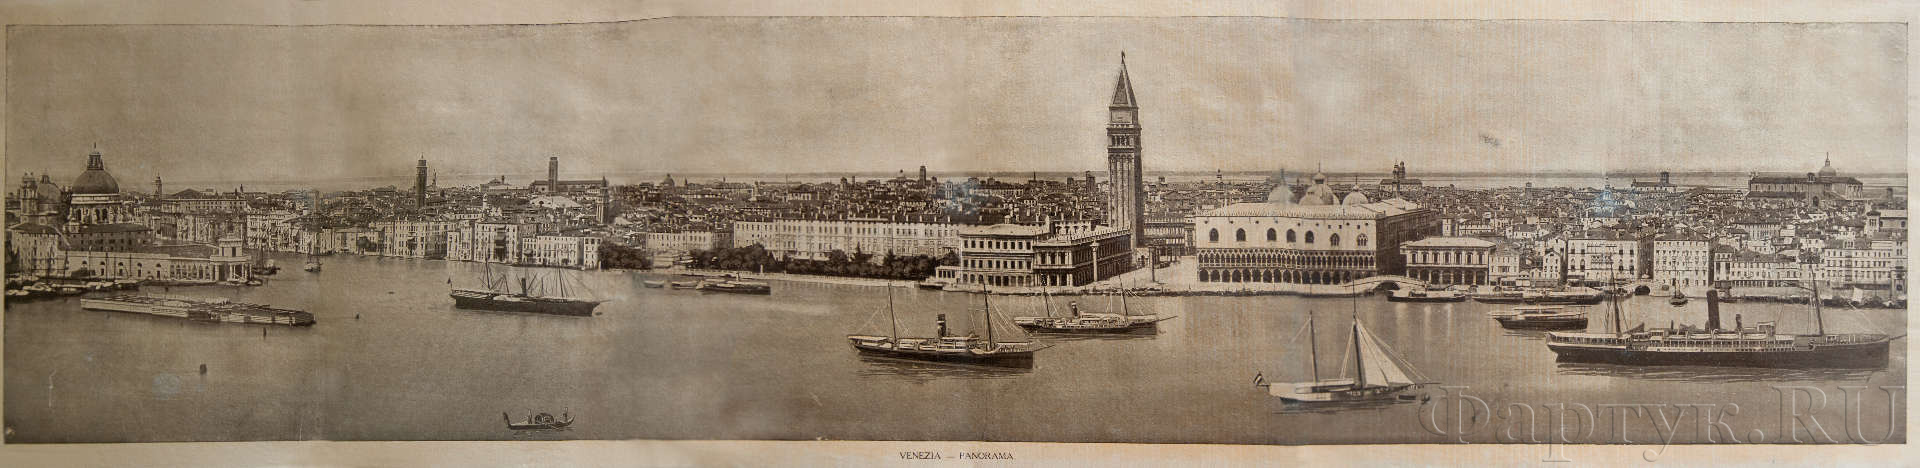 панорамный вид Венеции, примерно 1910 г., Италия